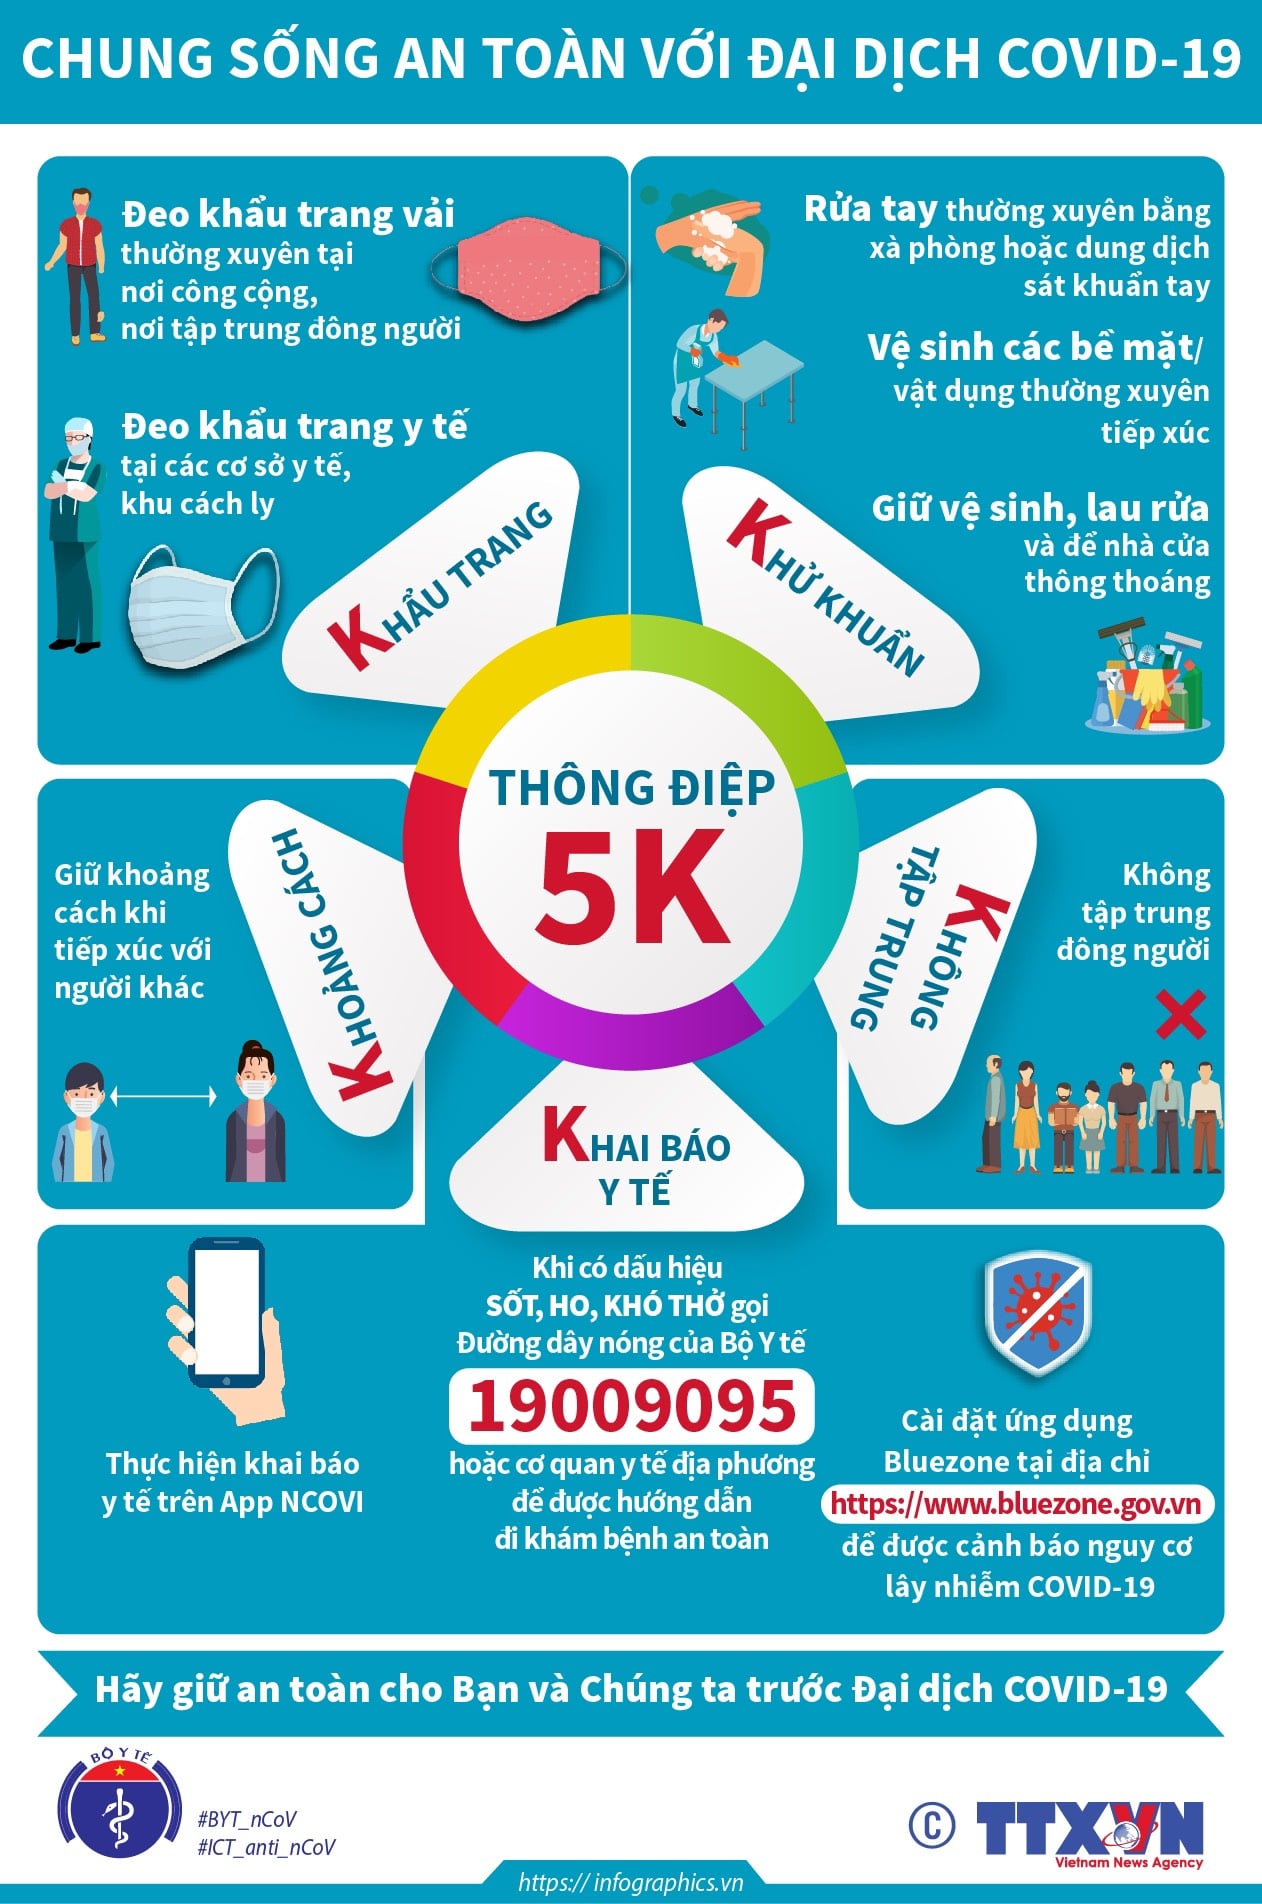 Quy tắc 5K là những yêu cầu quan trọng để đảm bảo an toàn và phòng chống dịch bệnh. Hãy xem hình ảnh liên quan để hiểu rõ hơn về quy tắc 5K và cùng thực hiện trong cuộc sống hàng ngày.